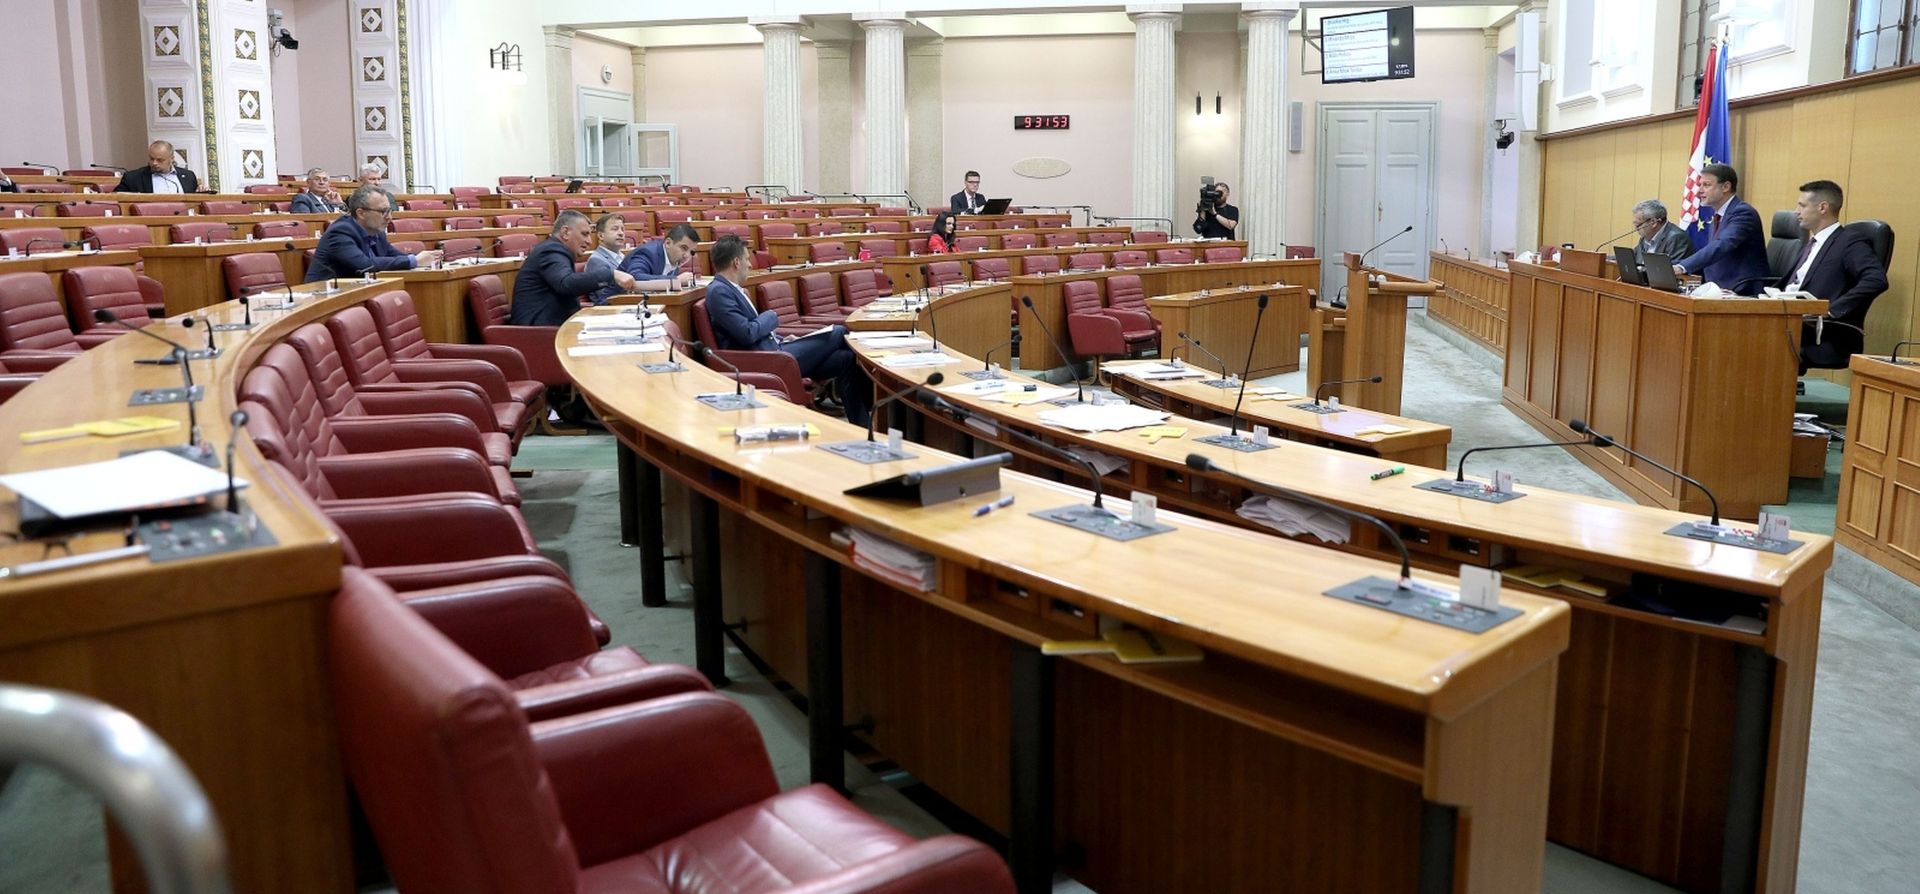 09.07.2019., Zagreb - Sabor je 12. sjednicu nastavio raspravom o prijedlogu Zakona o kreditnim institucijama.
Photo: Patrik Macek/PIXSELL